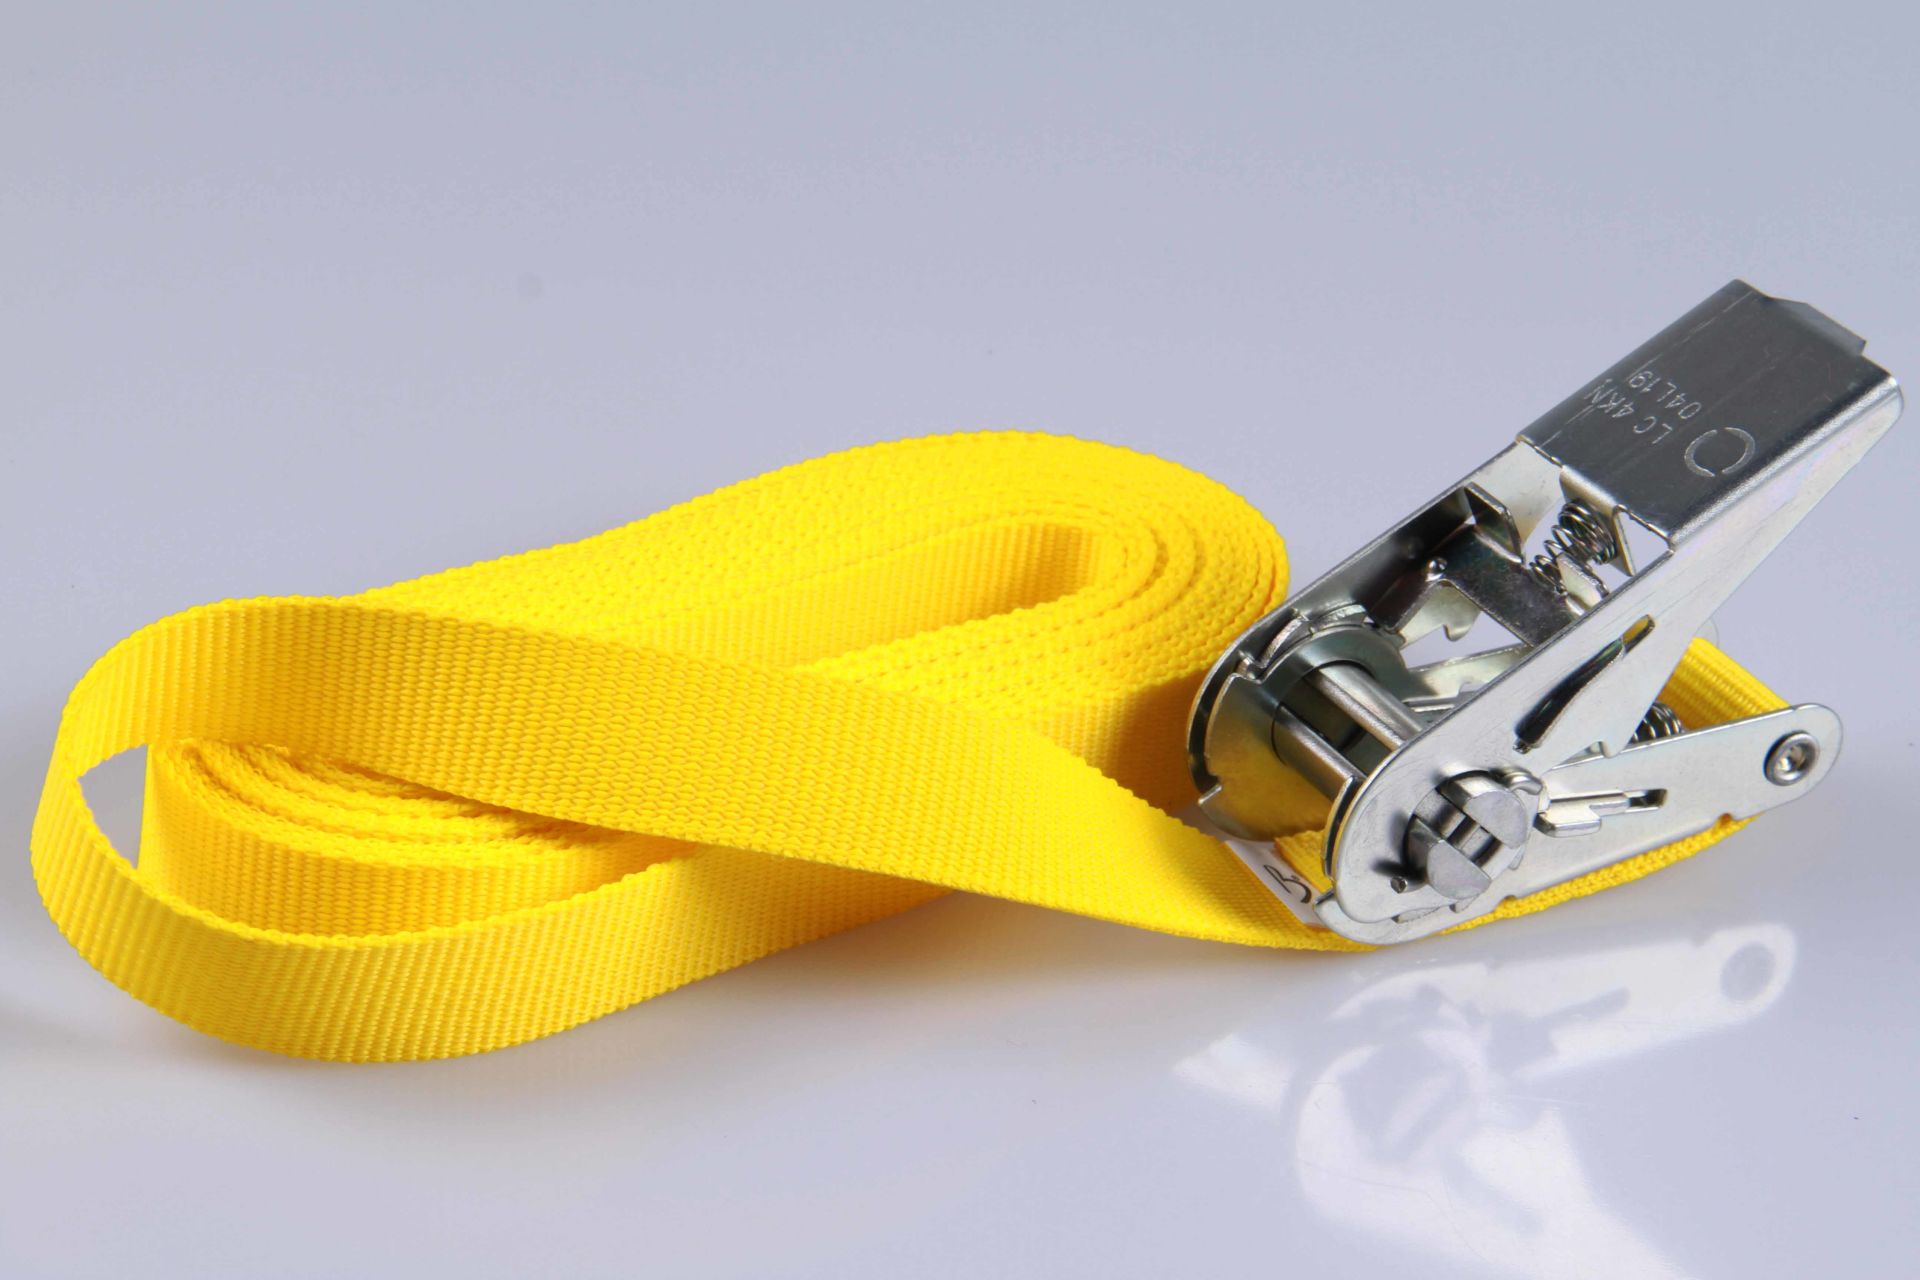 PP-Ratschengurte | 2-er SET | Transportsicherung | 25 mm breit x 3 m lang | Gelb | Silberfarbene oder schwarze Ratsche